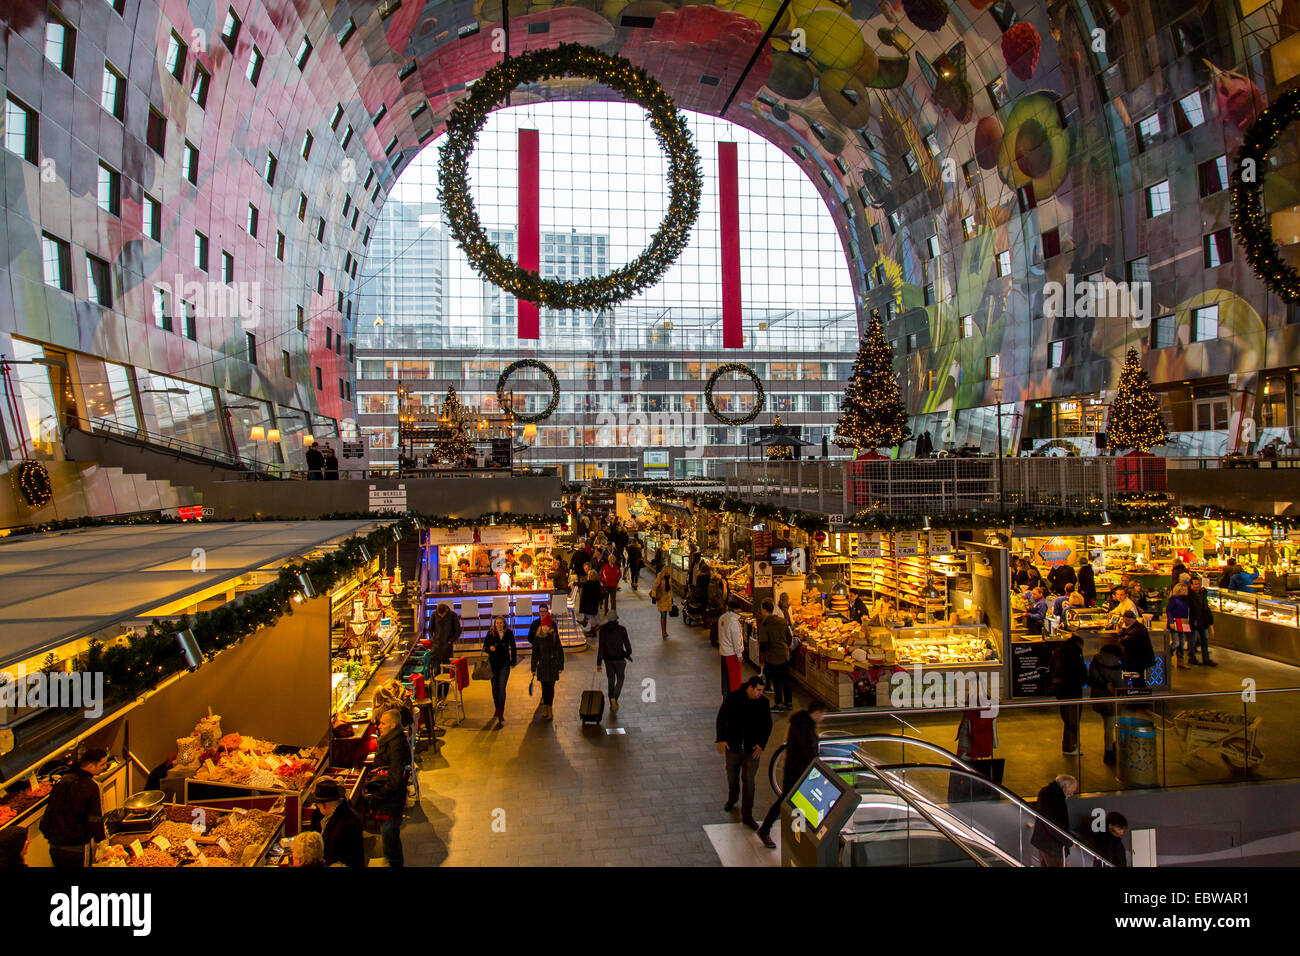 La nouvelle halle à Rotterdam, restaurants, commerces, du marché, des peintures murales, Banque D'Images